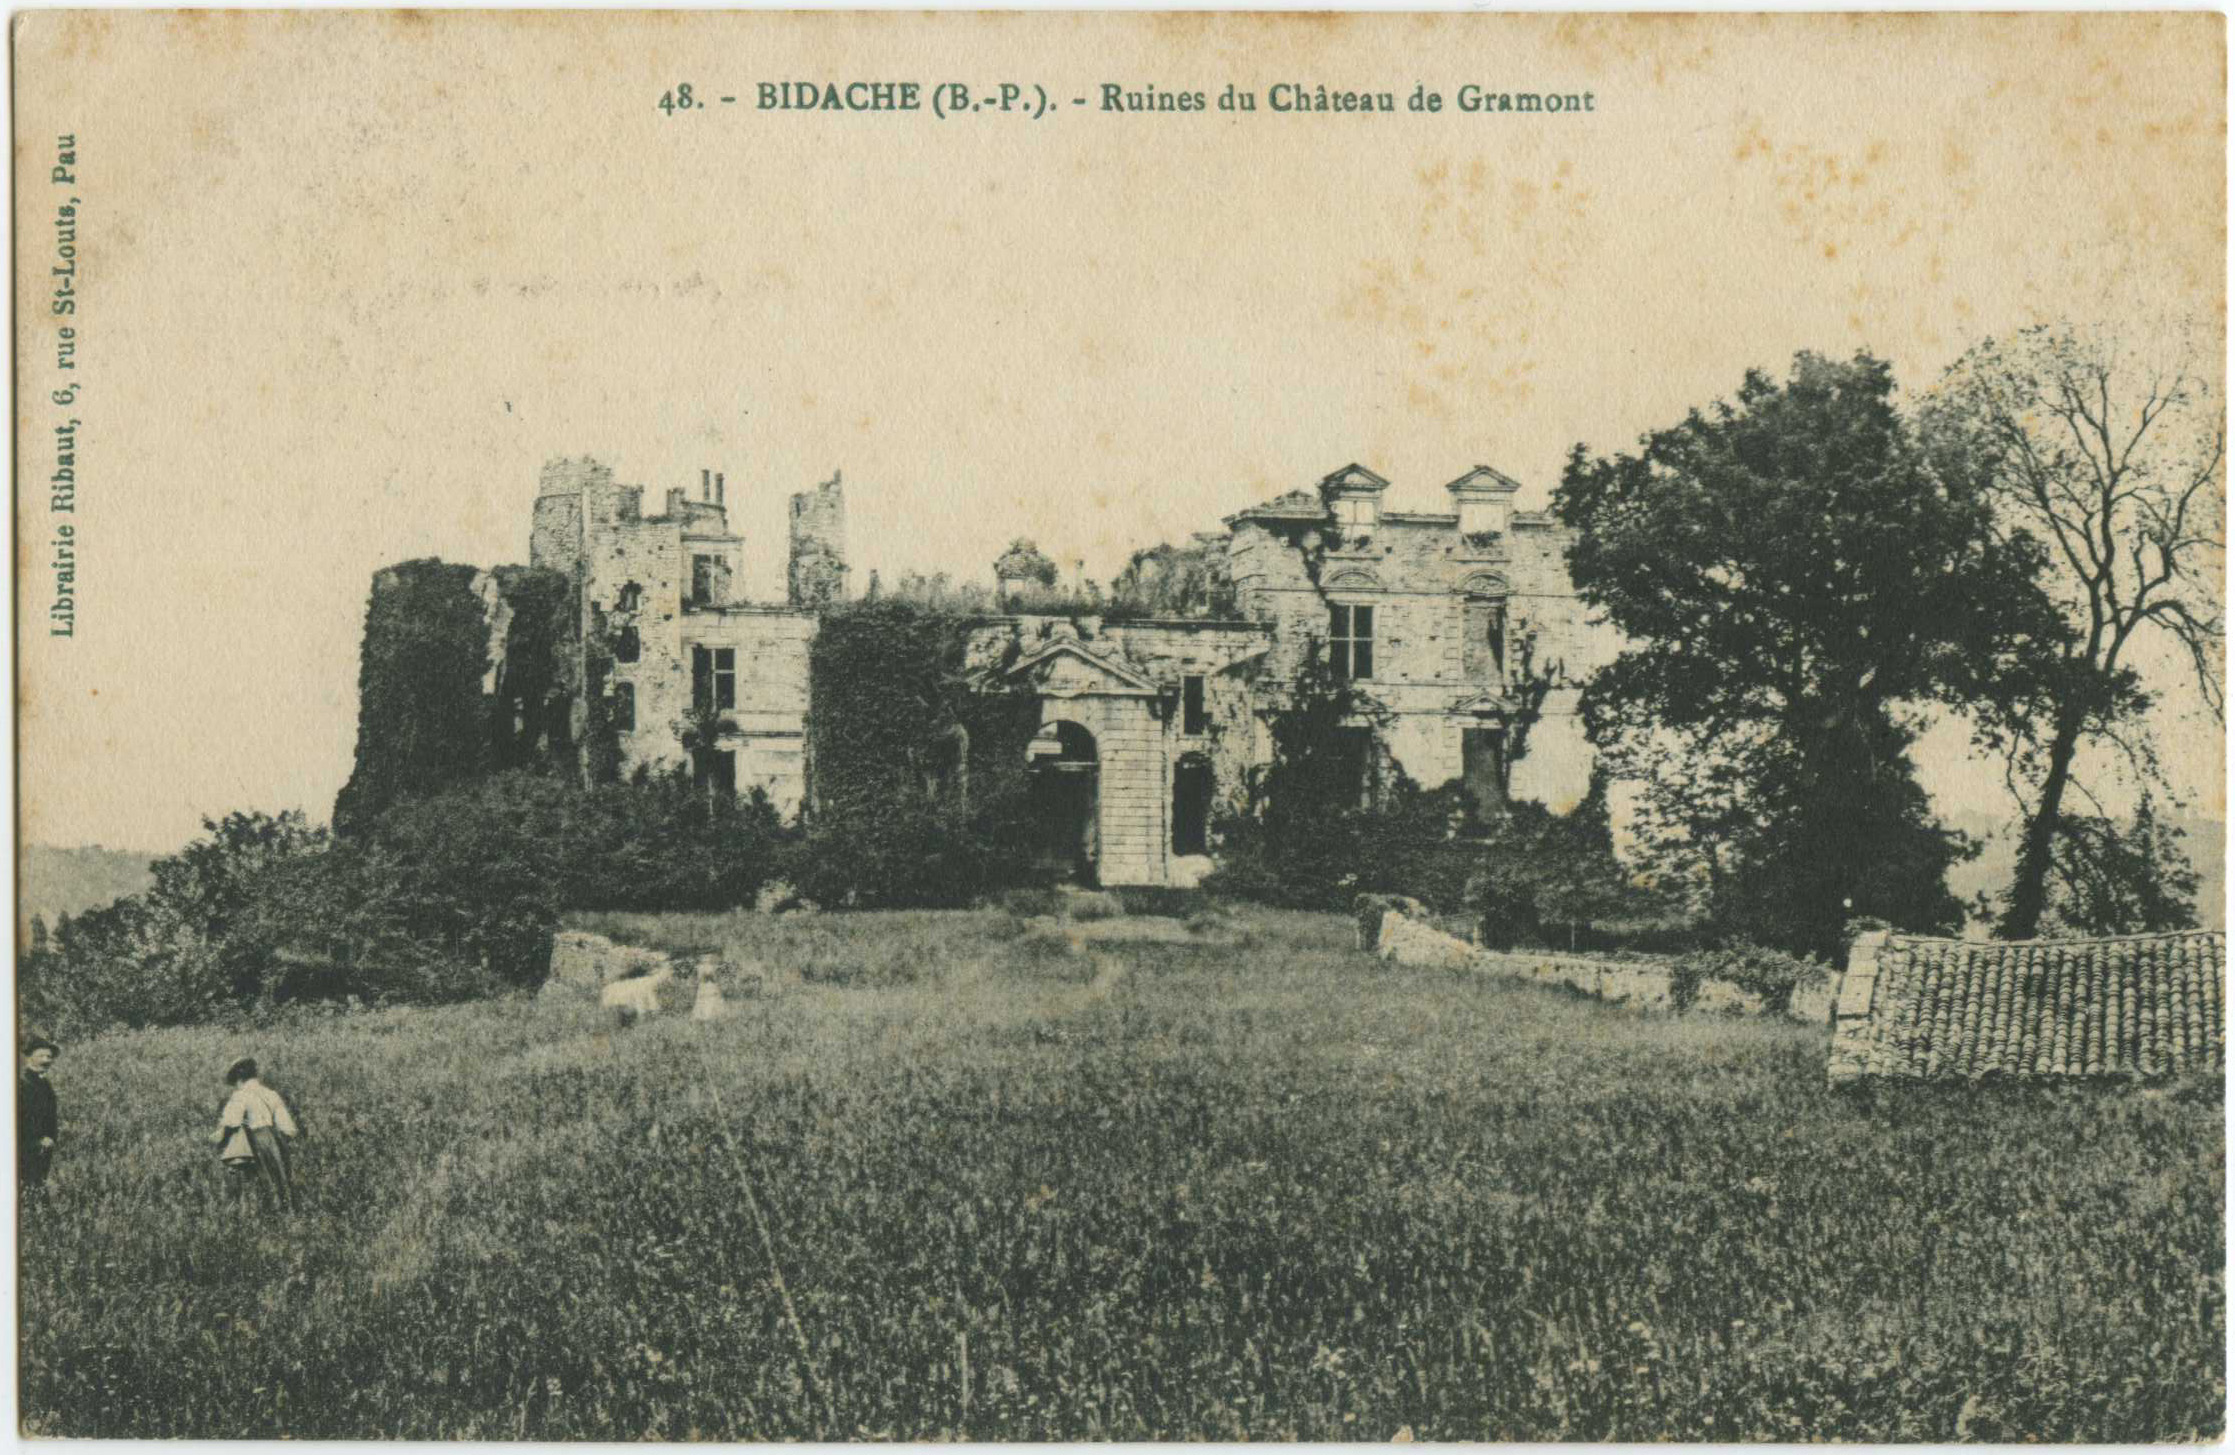 Bidache - Ruines du Château de Gramont